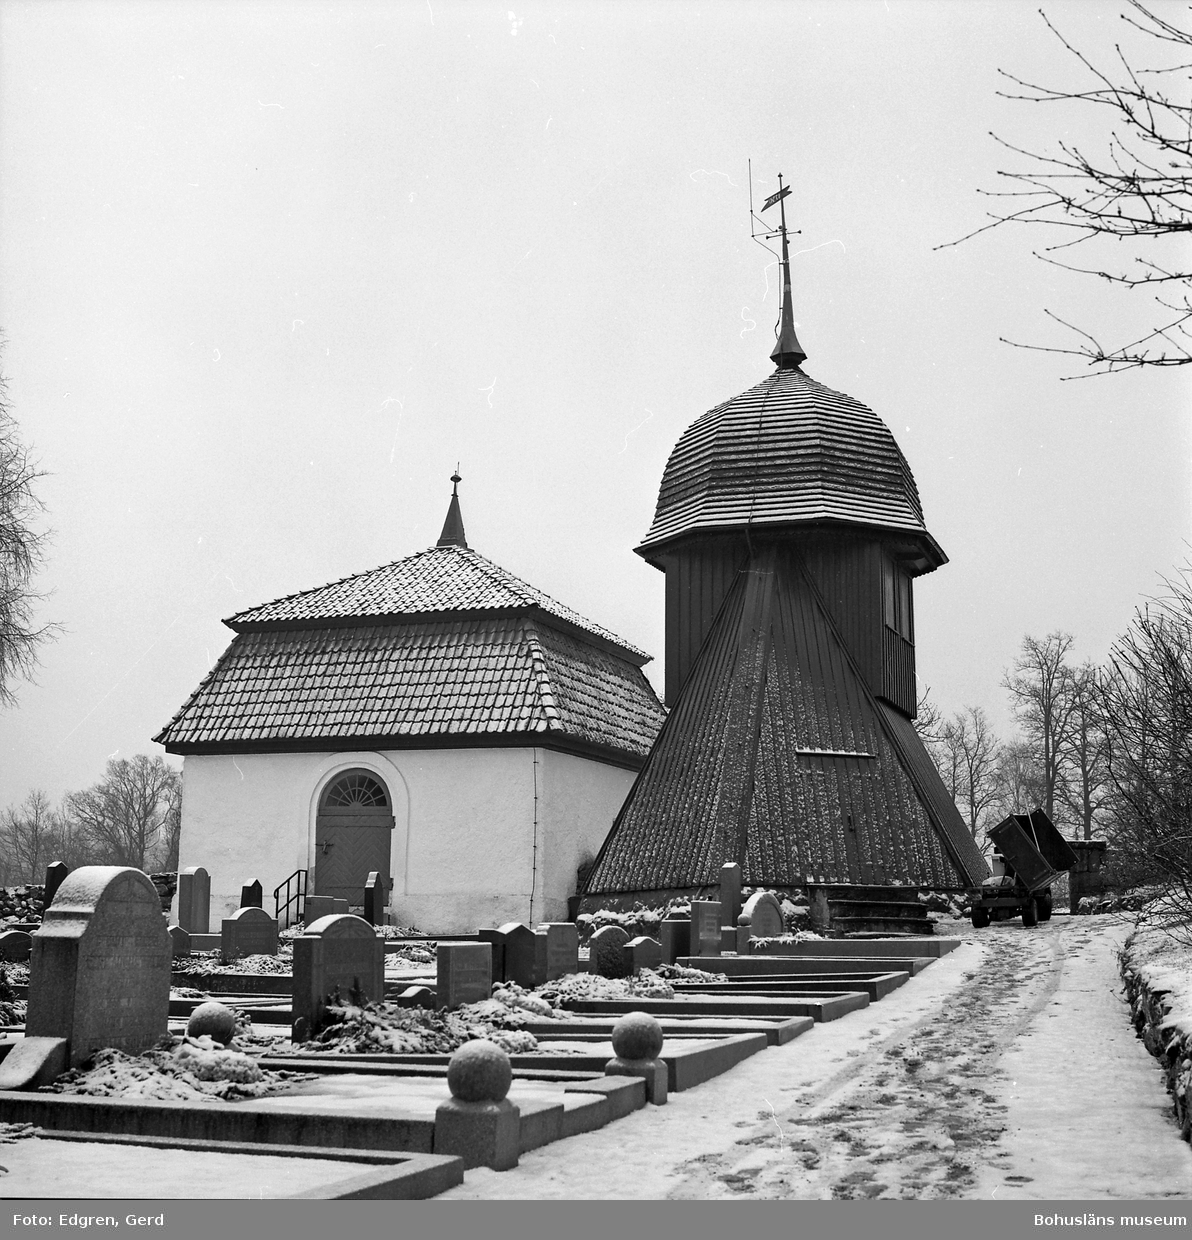 Text till bilden: "Kållereds kyrka. Kyrkegården söder om kyrkan. Almroths gravkor, byggt 1775. Klockstapel byggd 1827".